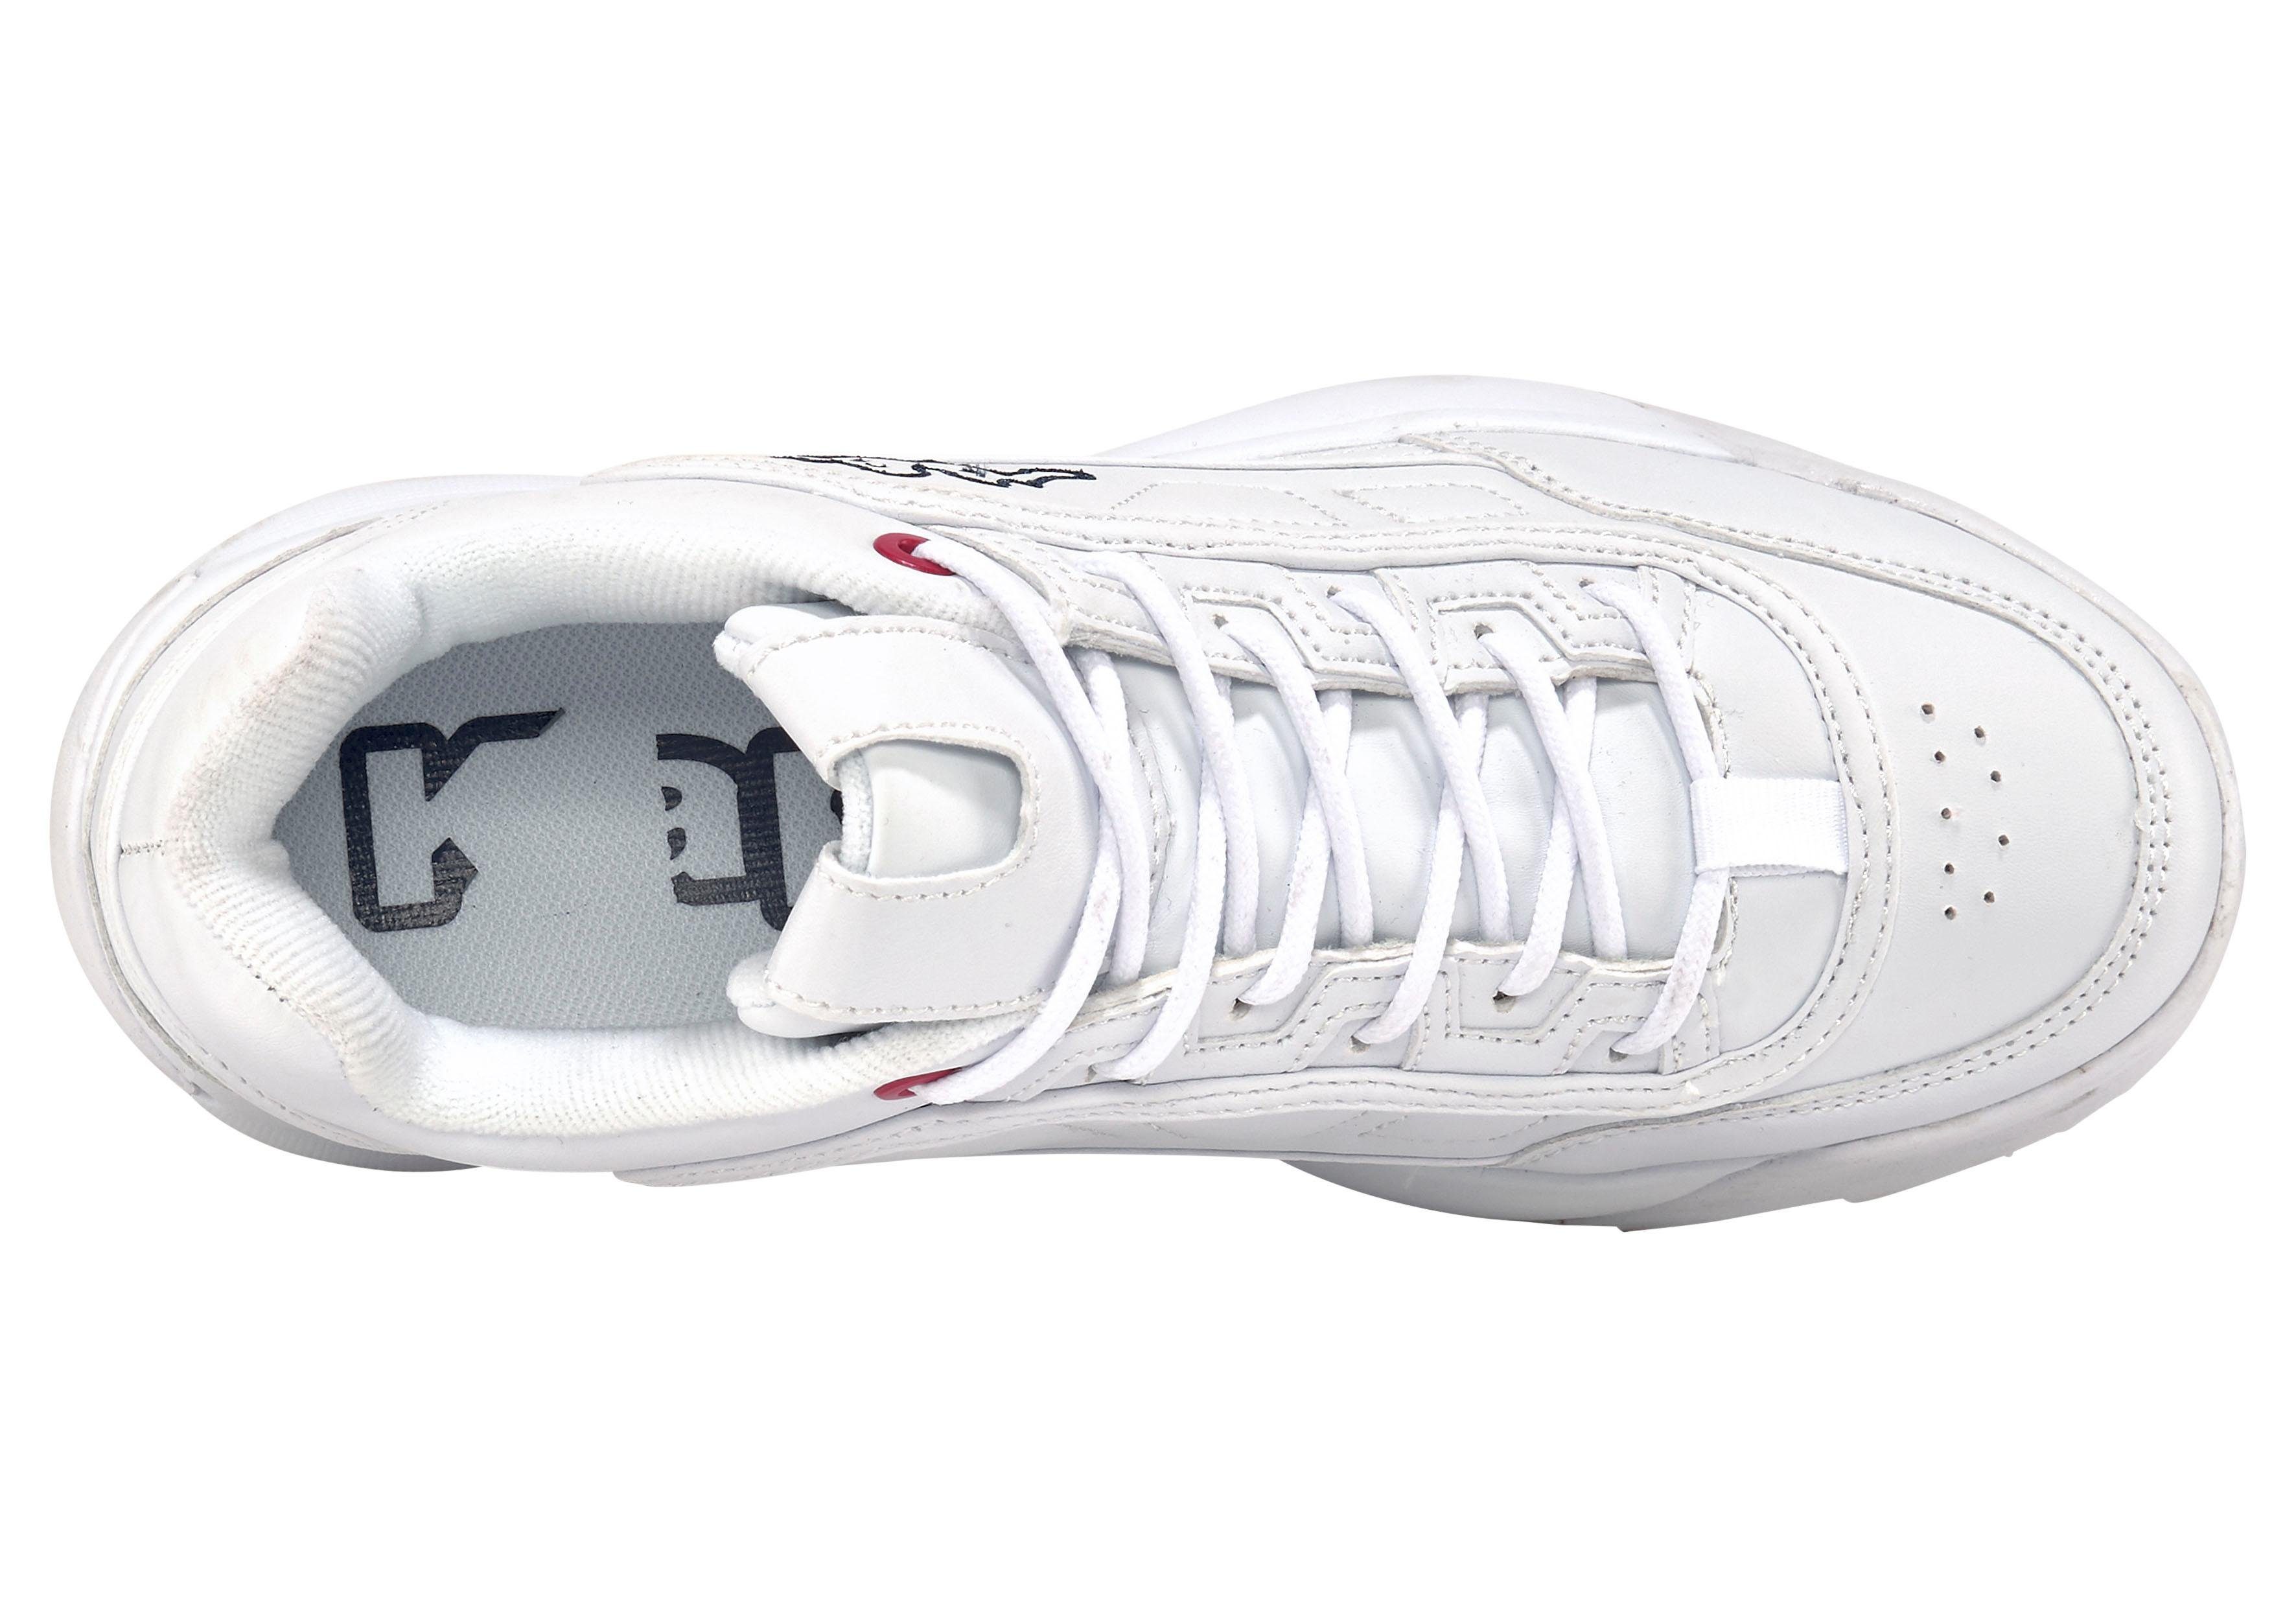 Sneaker white Kappa